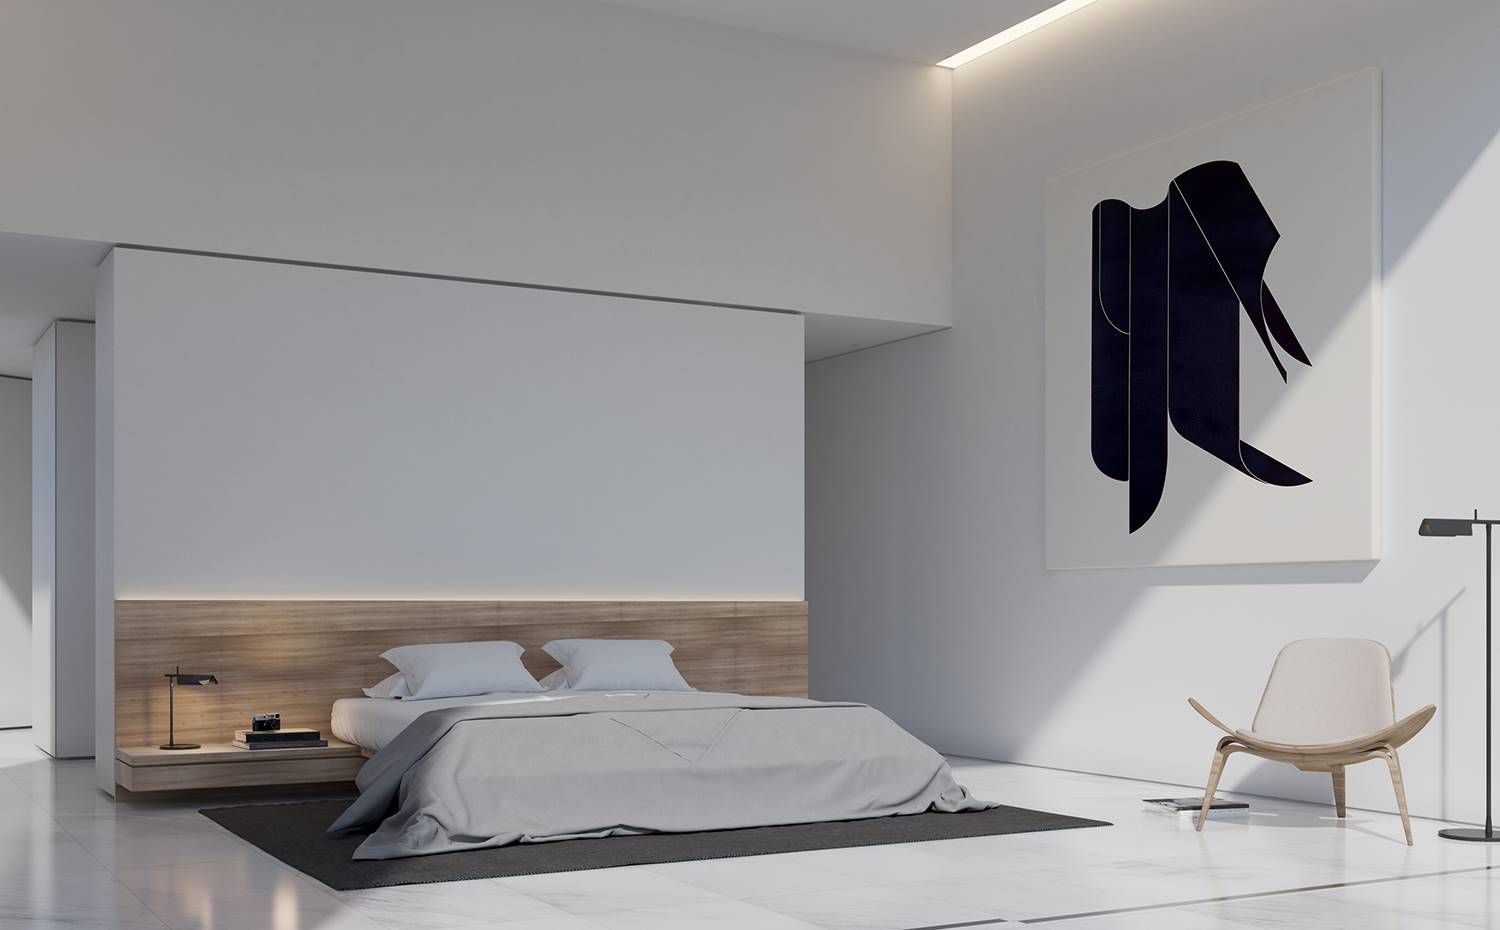 Interior dormitorio, cama tipo tatami, cabecero madera con mesilla integrada, butca blanca. Los dormitorios se sitúan en el segundo volúmen de la casa, orientados hacia una zona boscosa con el fin de preservar la privacidad de sus propietarios. 